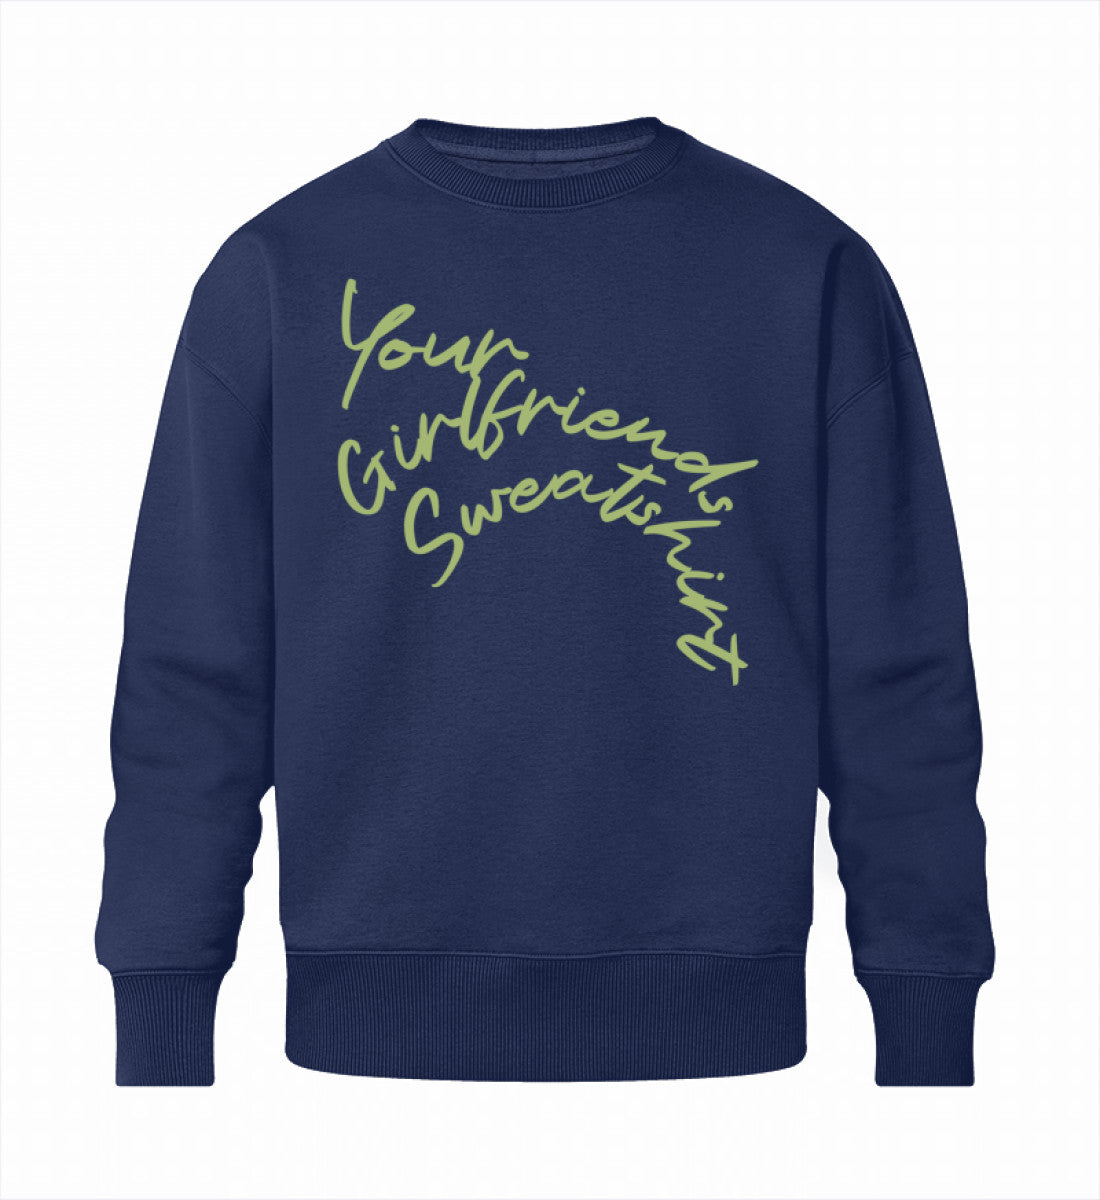 French Navy Blue Sweatshirt Unisex für Frauen und Männer bedruckt mit dem Design der Roger Rockawoo Kollektion Your Girlfriends Sweatshirt